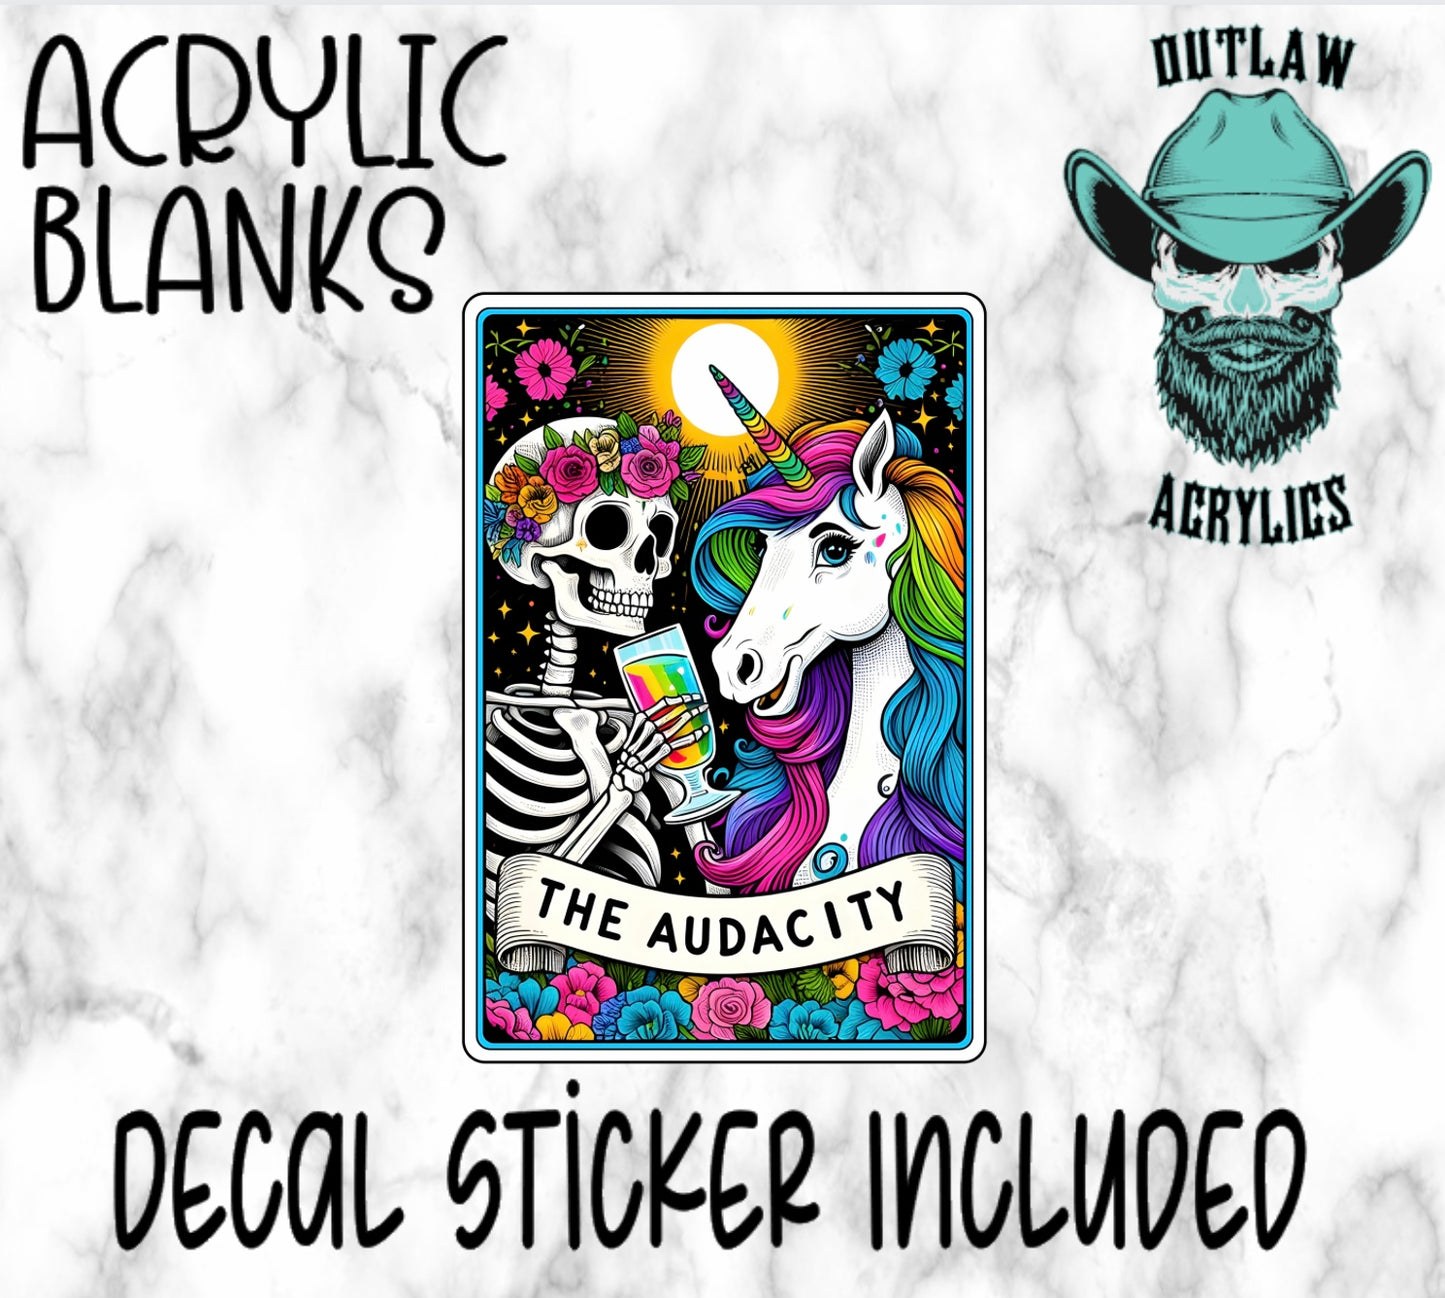 The Audacity Tarot Card Style Acrylic & Decal Set